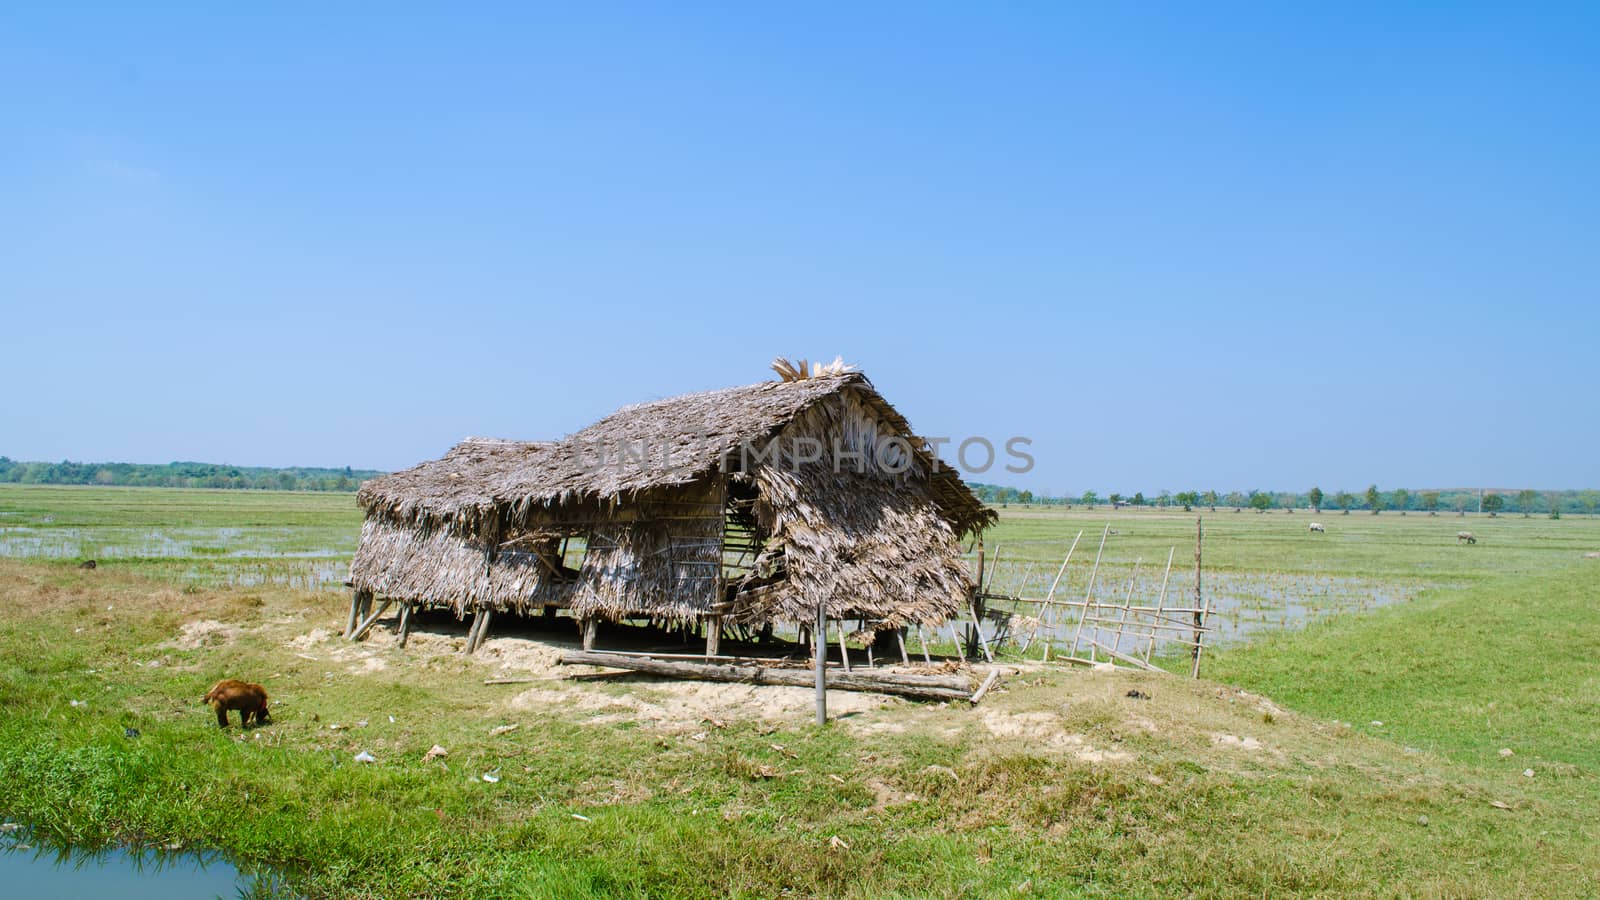 Old farmhouse in the field. - Myanmar farmer. by kerdkanno